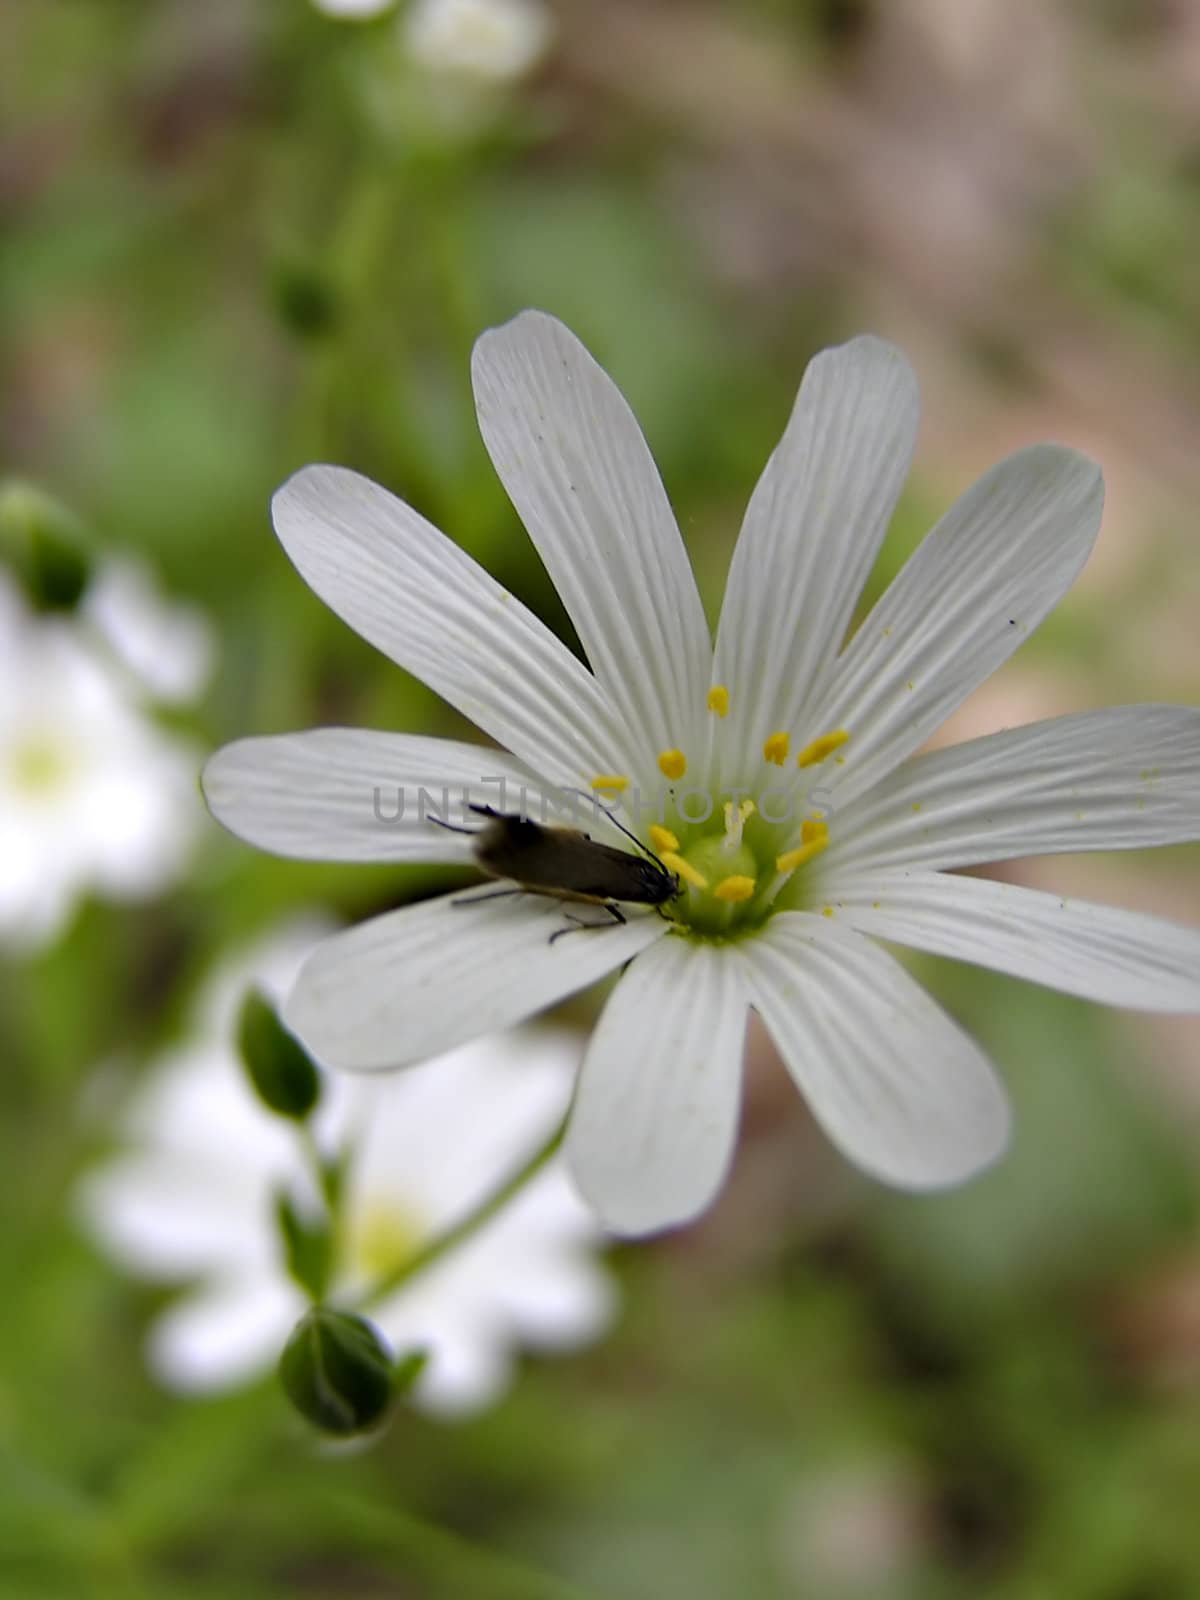 White flower with dark bug on it.